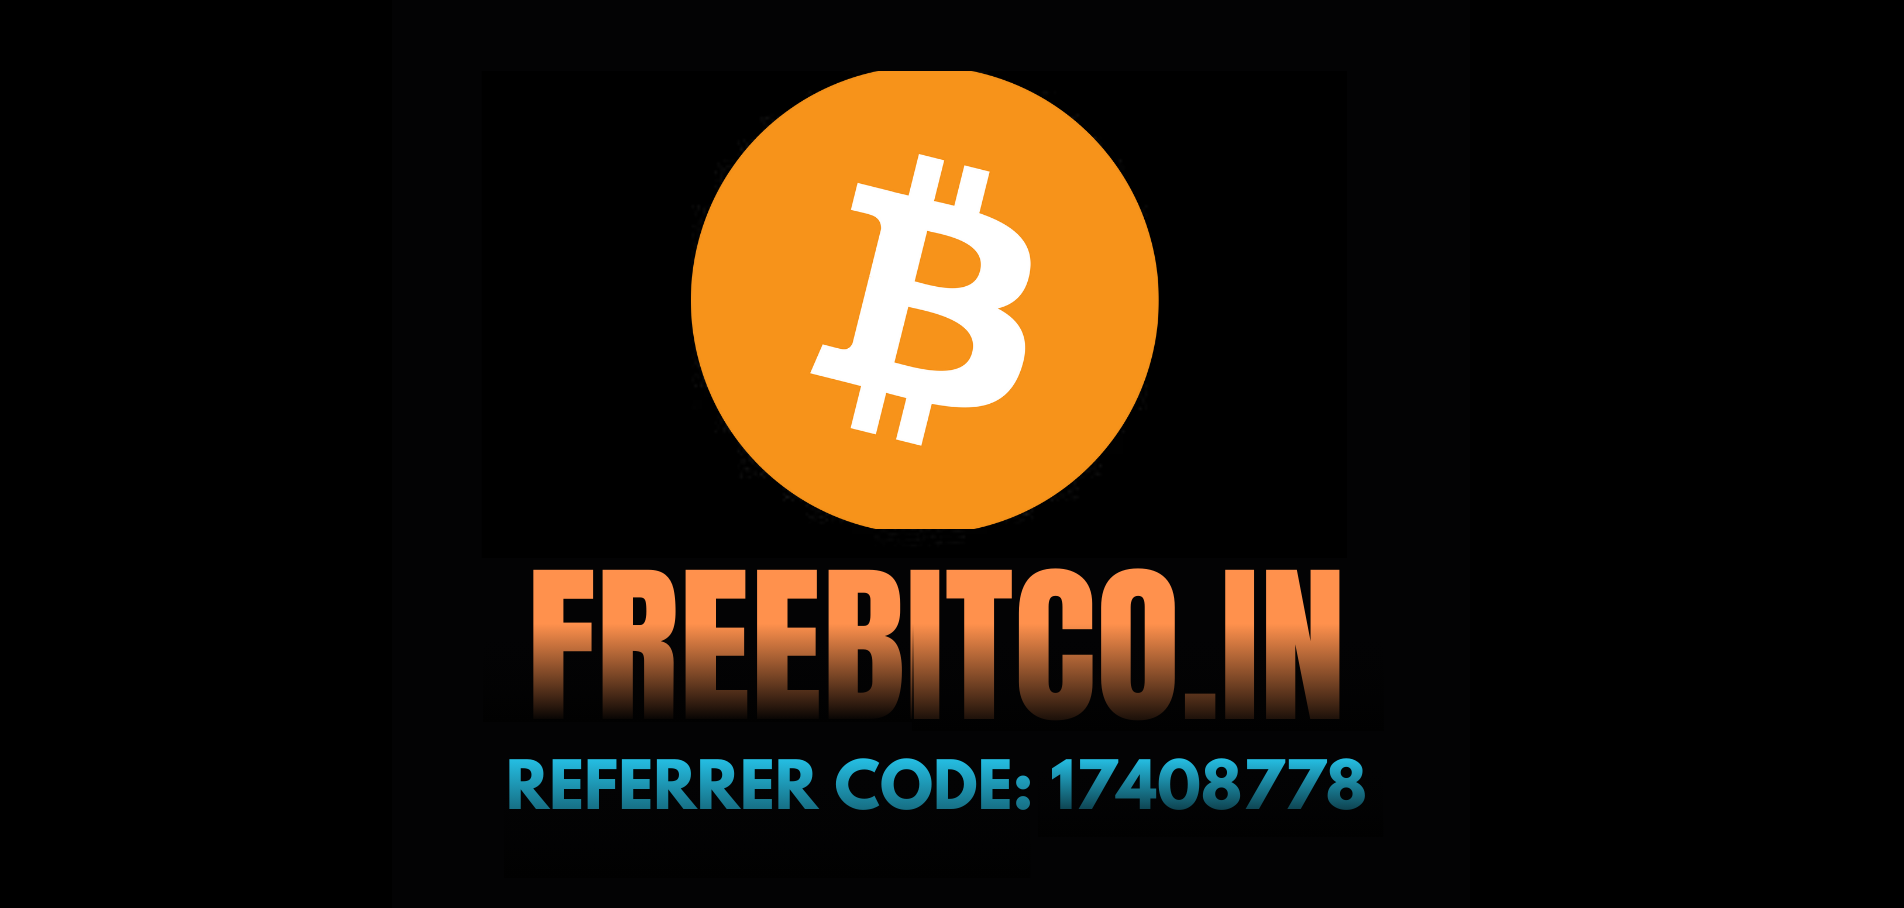 FreeBitco.in referral code: 17408778